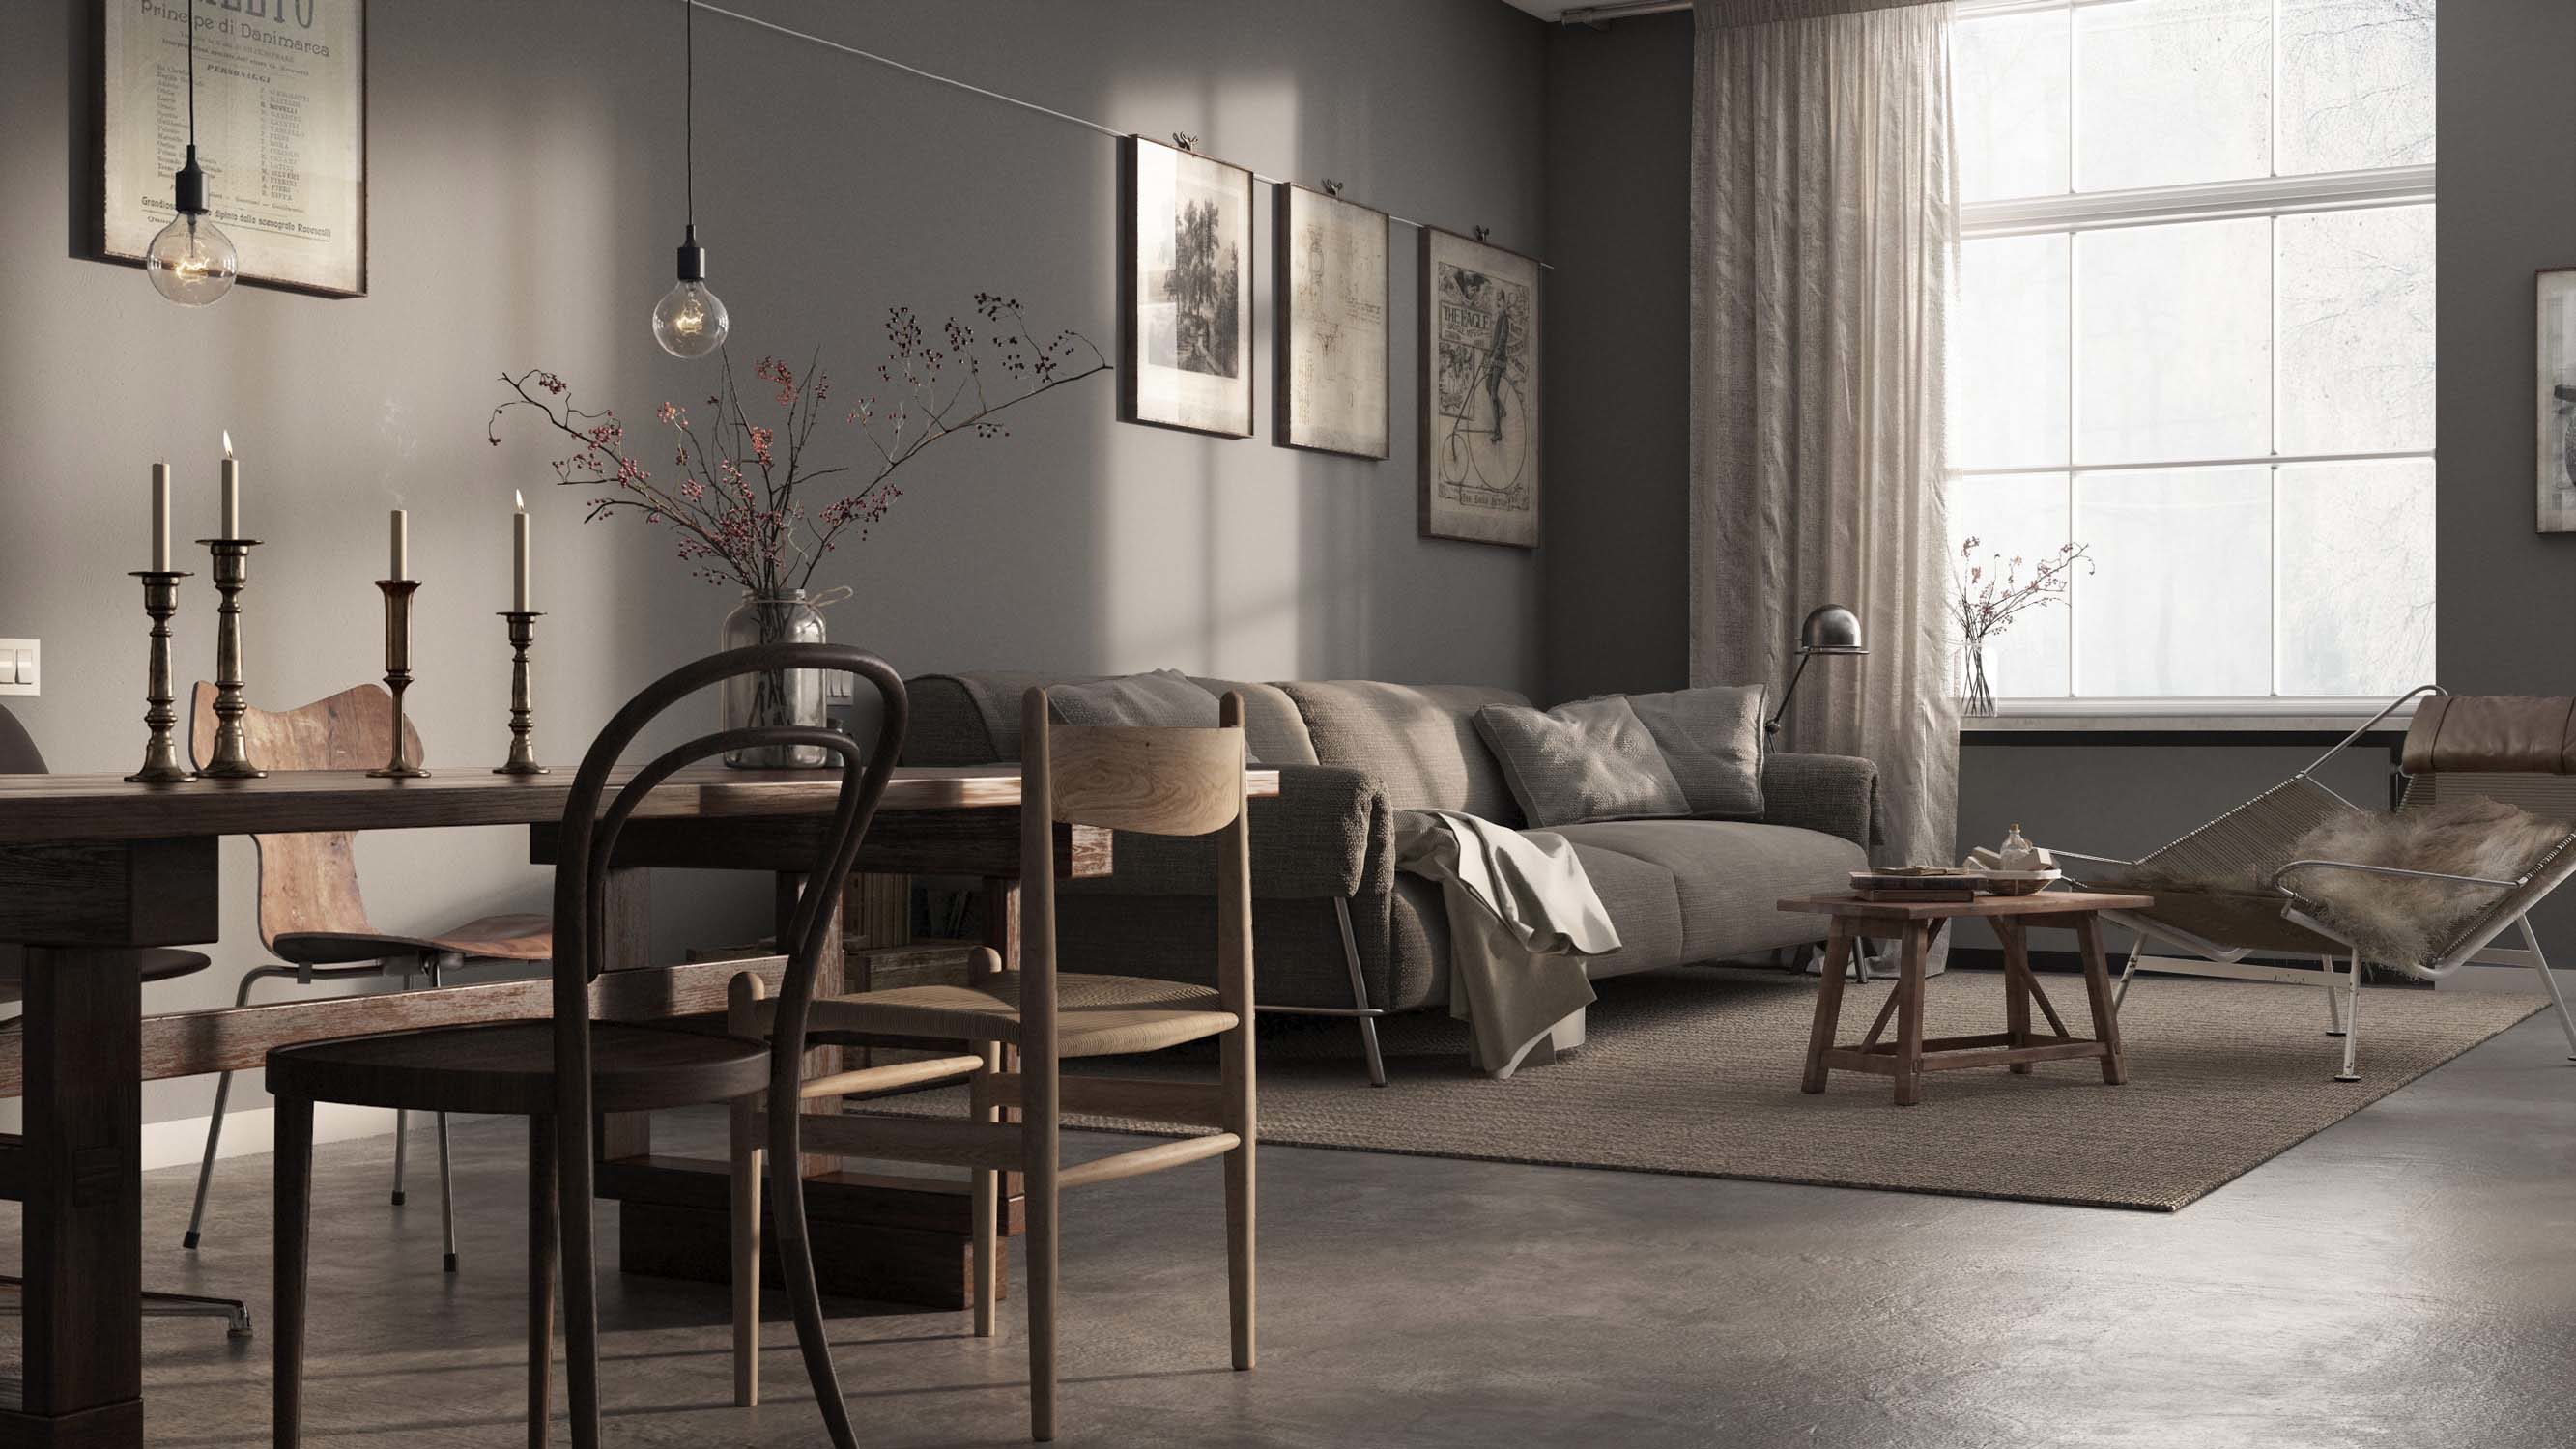 Swedish apartment in Malmo – Level Creative studio, 2015